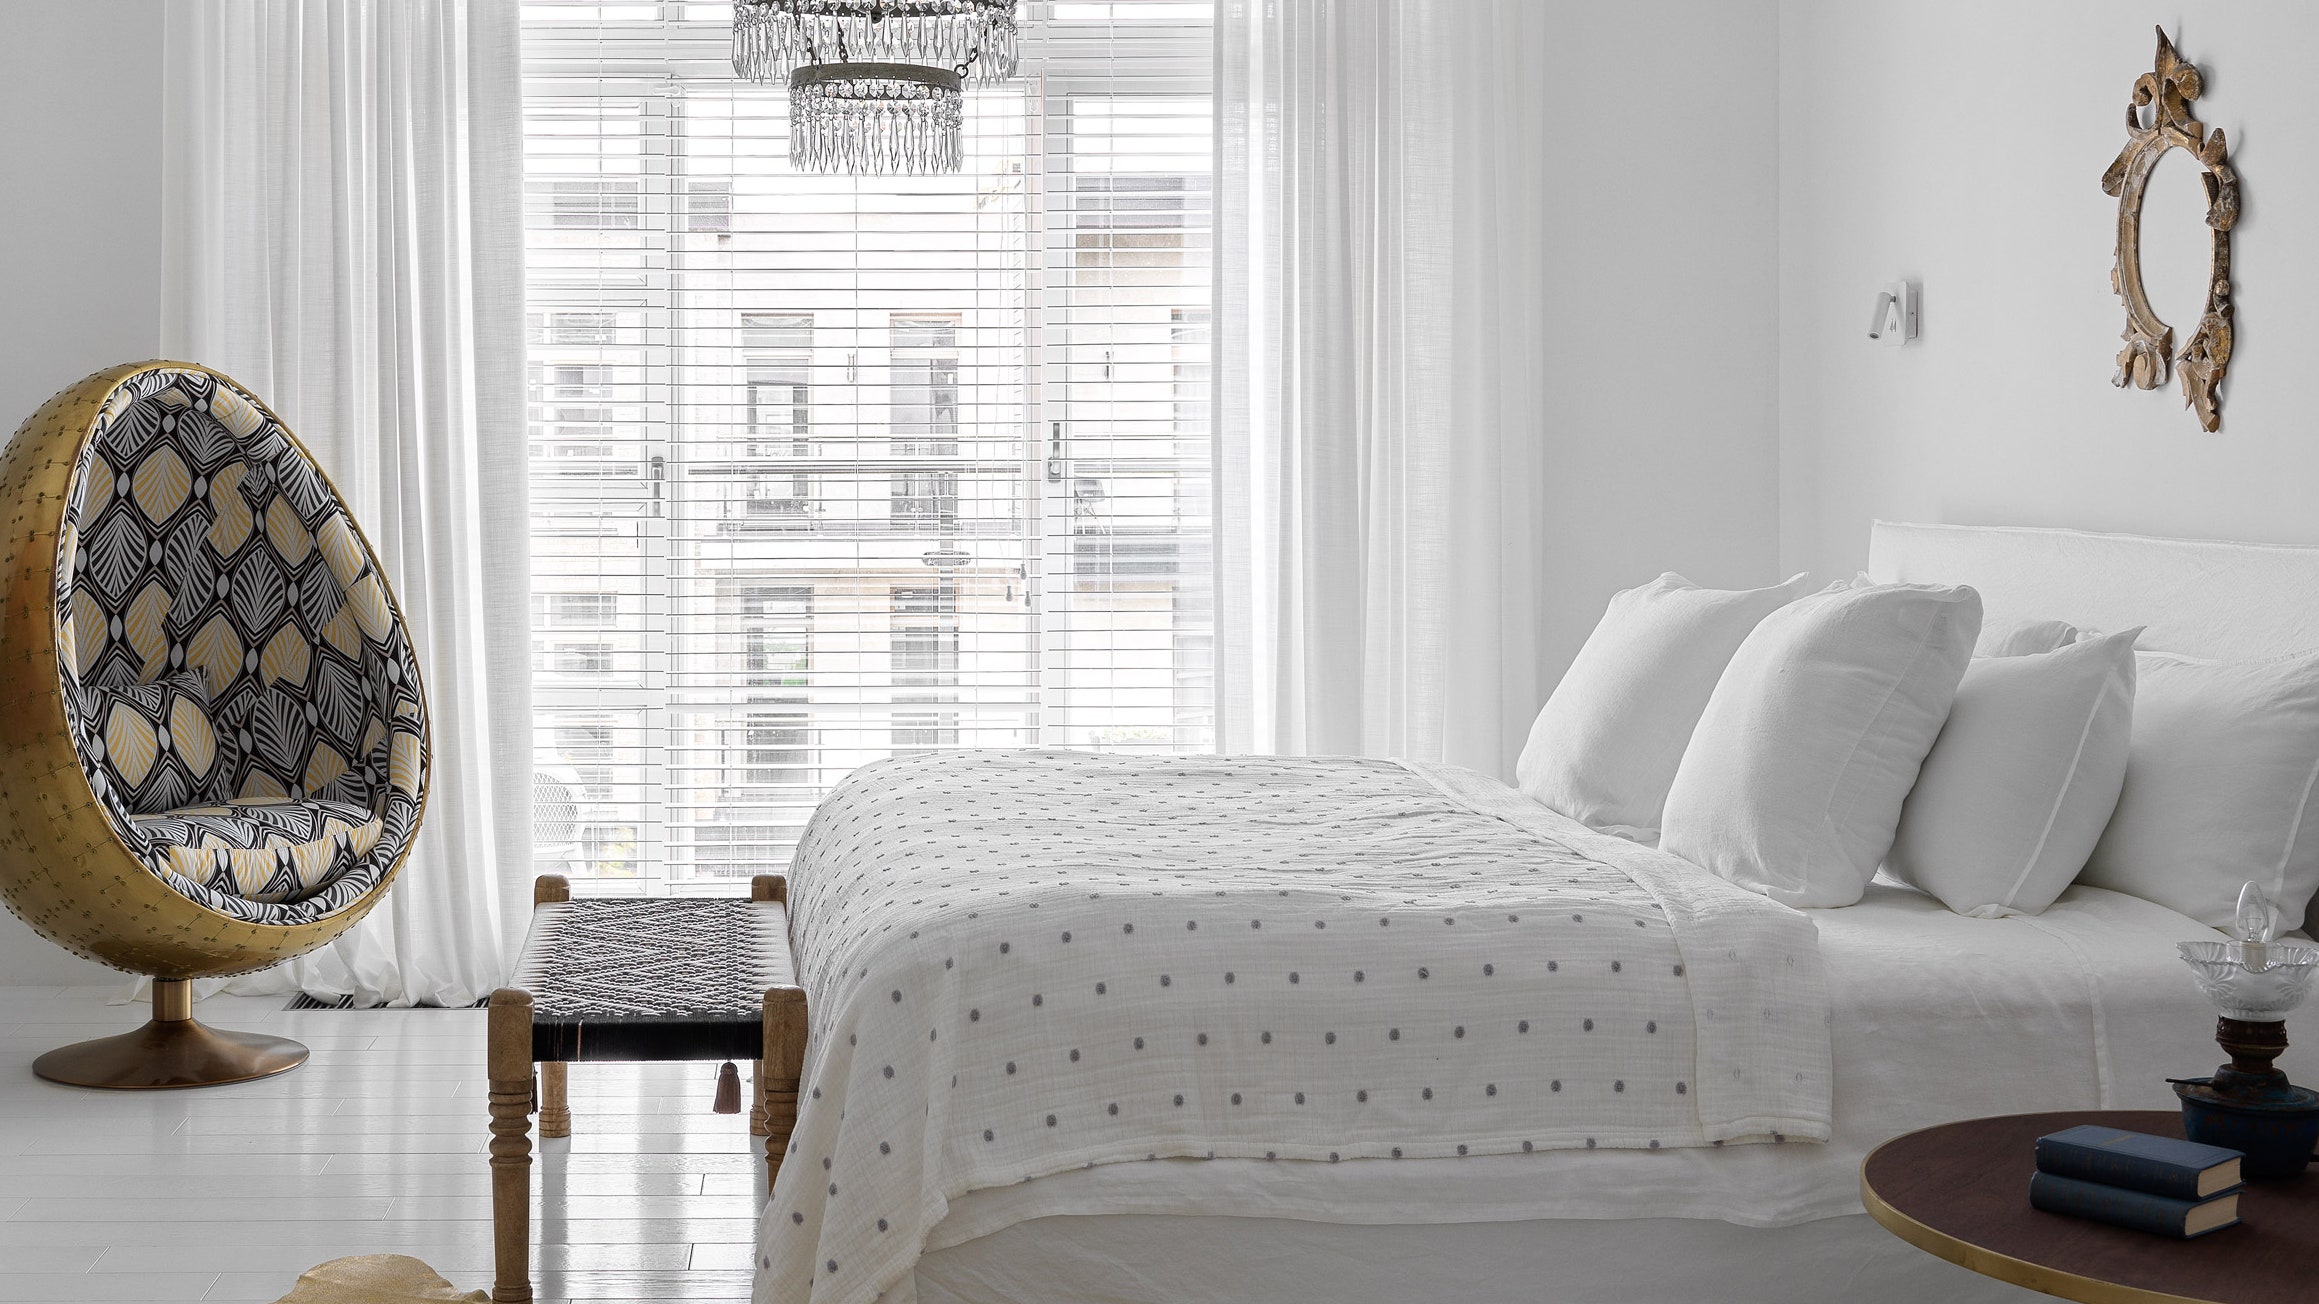 Дизайн интерьера спальни в современном стиле - 65 фото идей